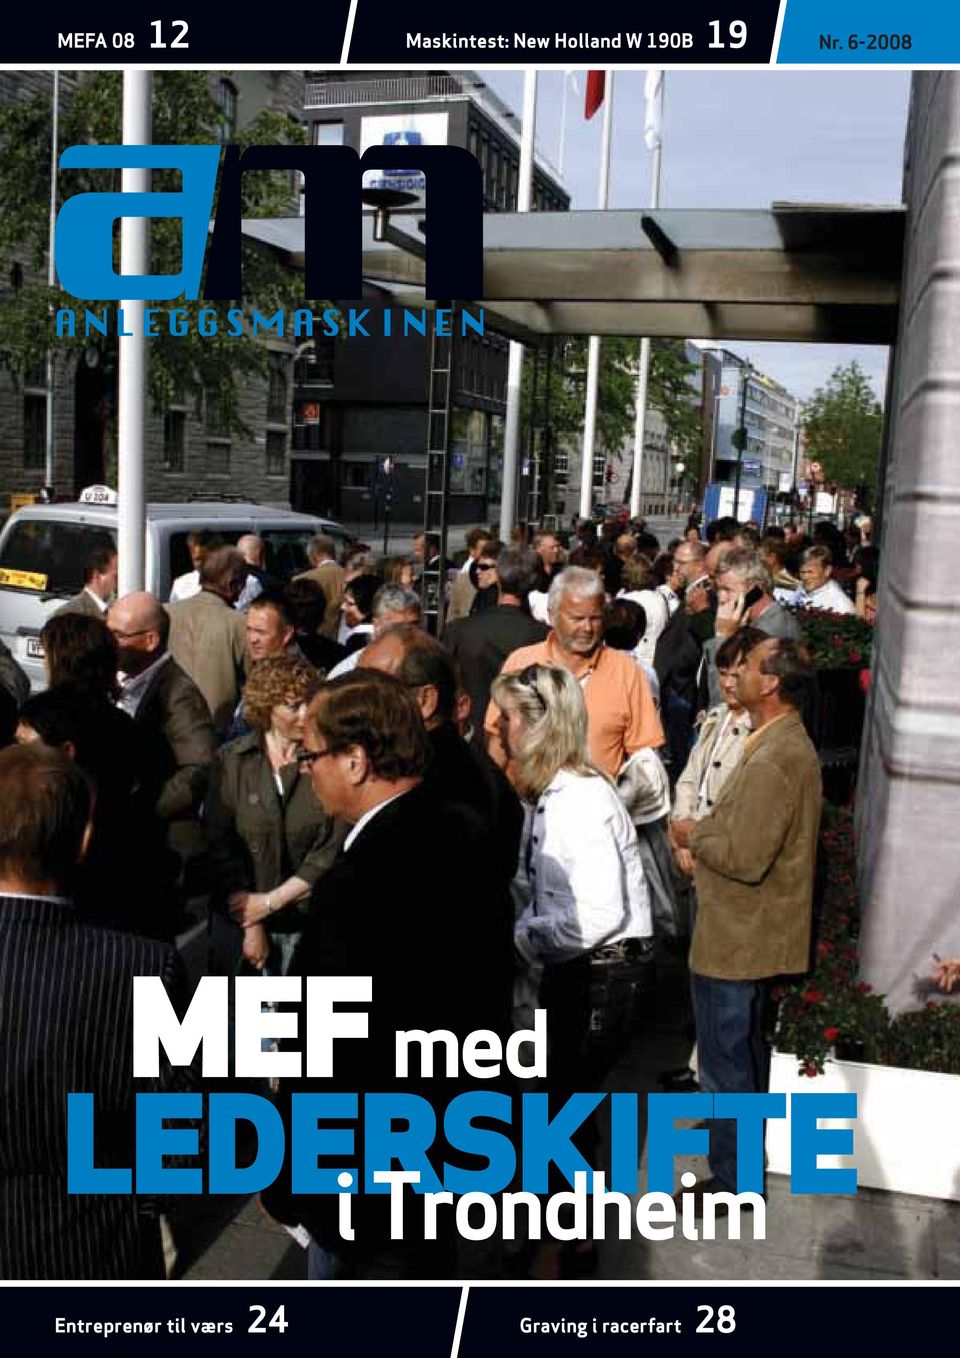 6-2008 MEF med LEDERSKIFTE i